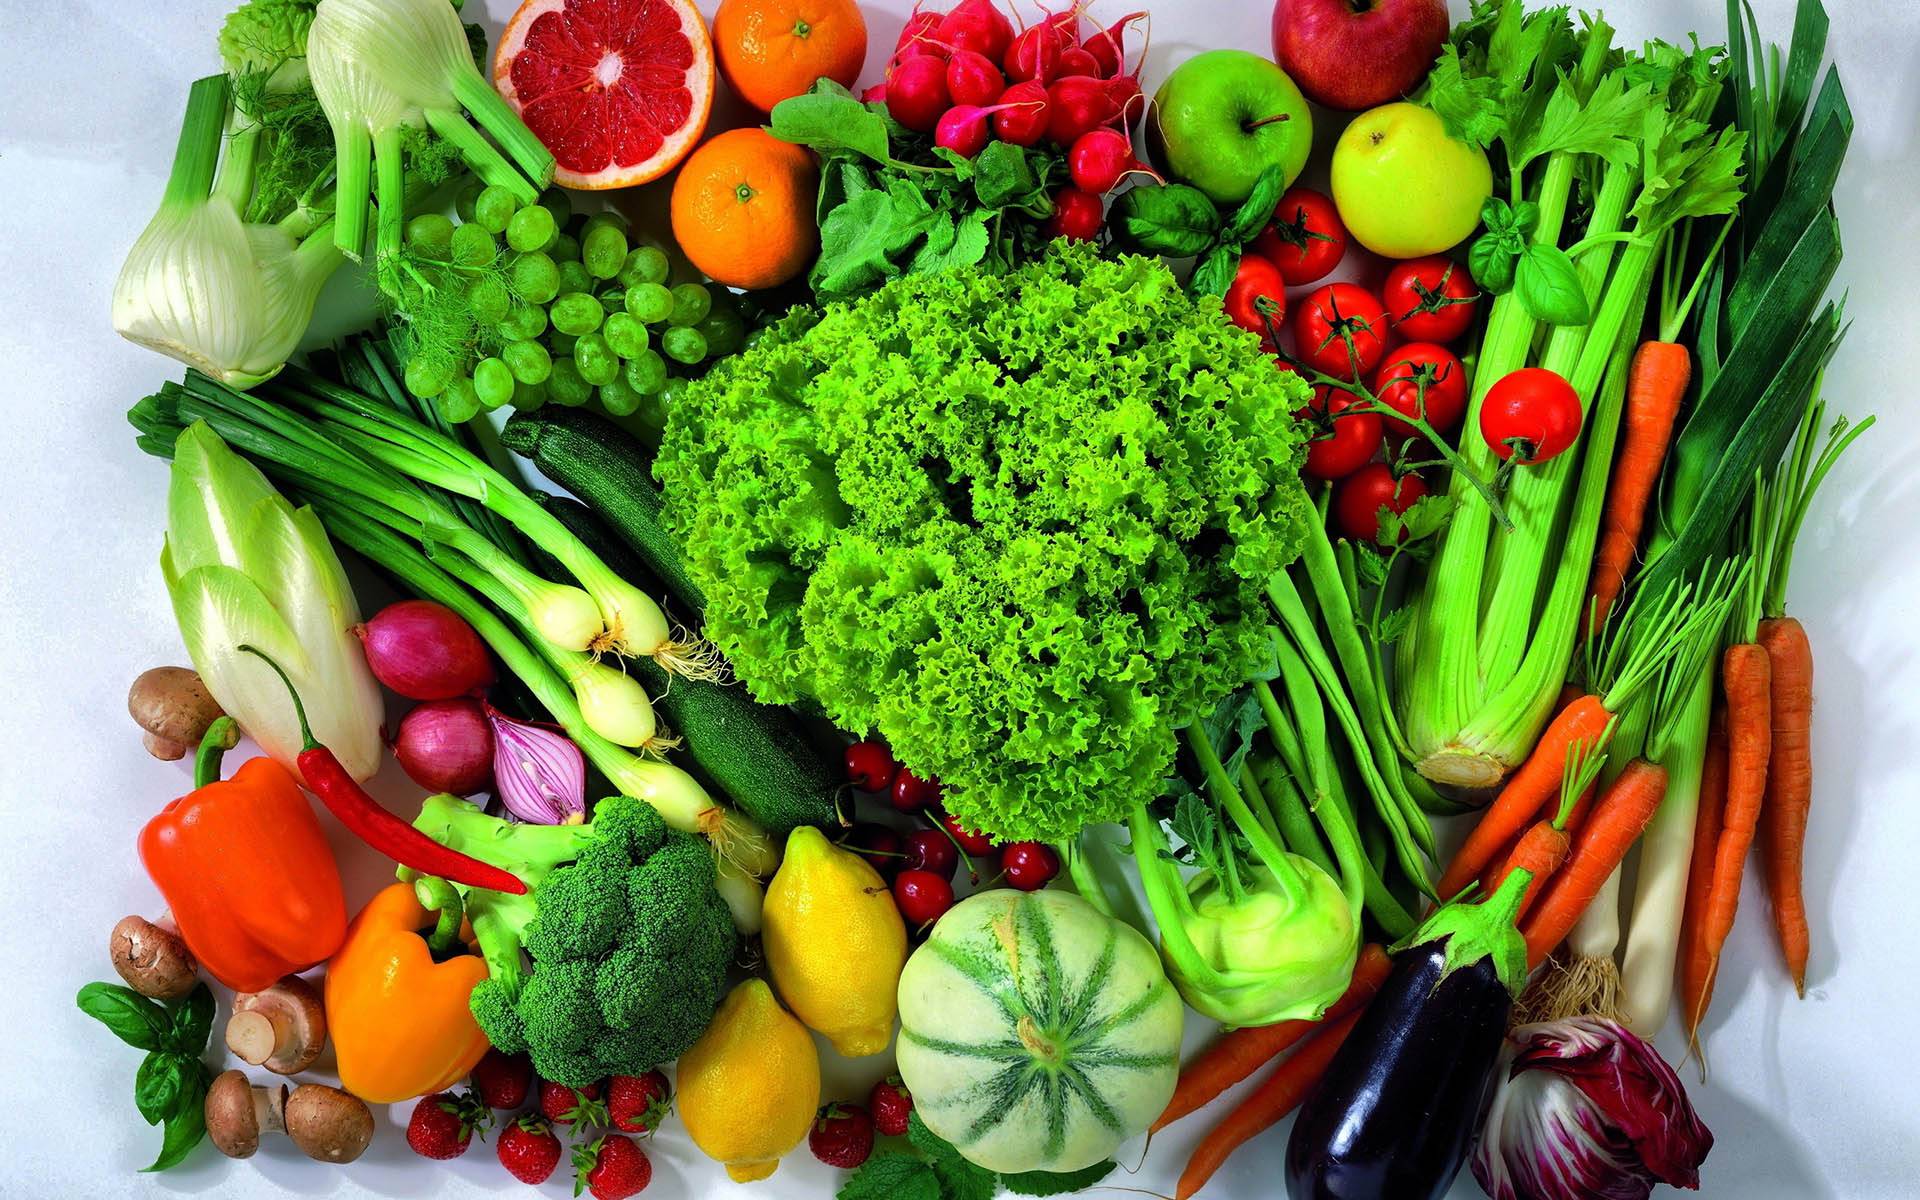 جدیدترین قیمت انواع میوه و سبزیجات دربازار + جدول